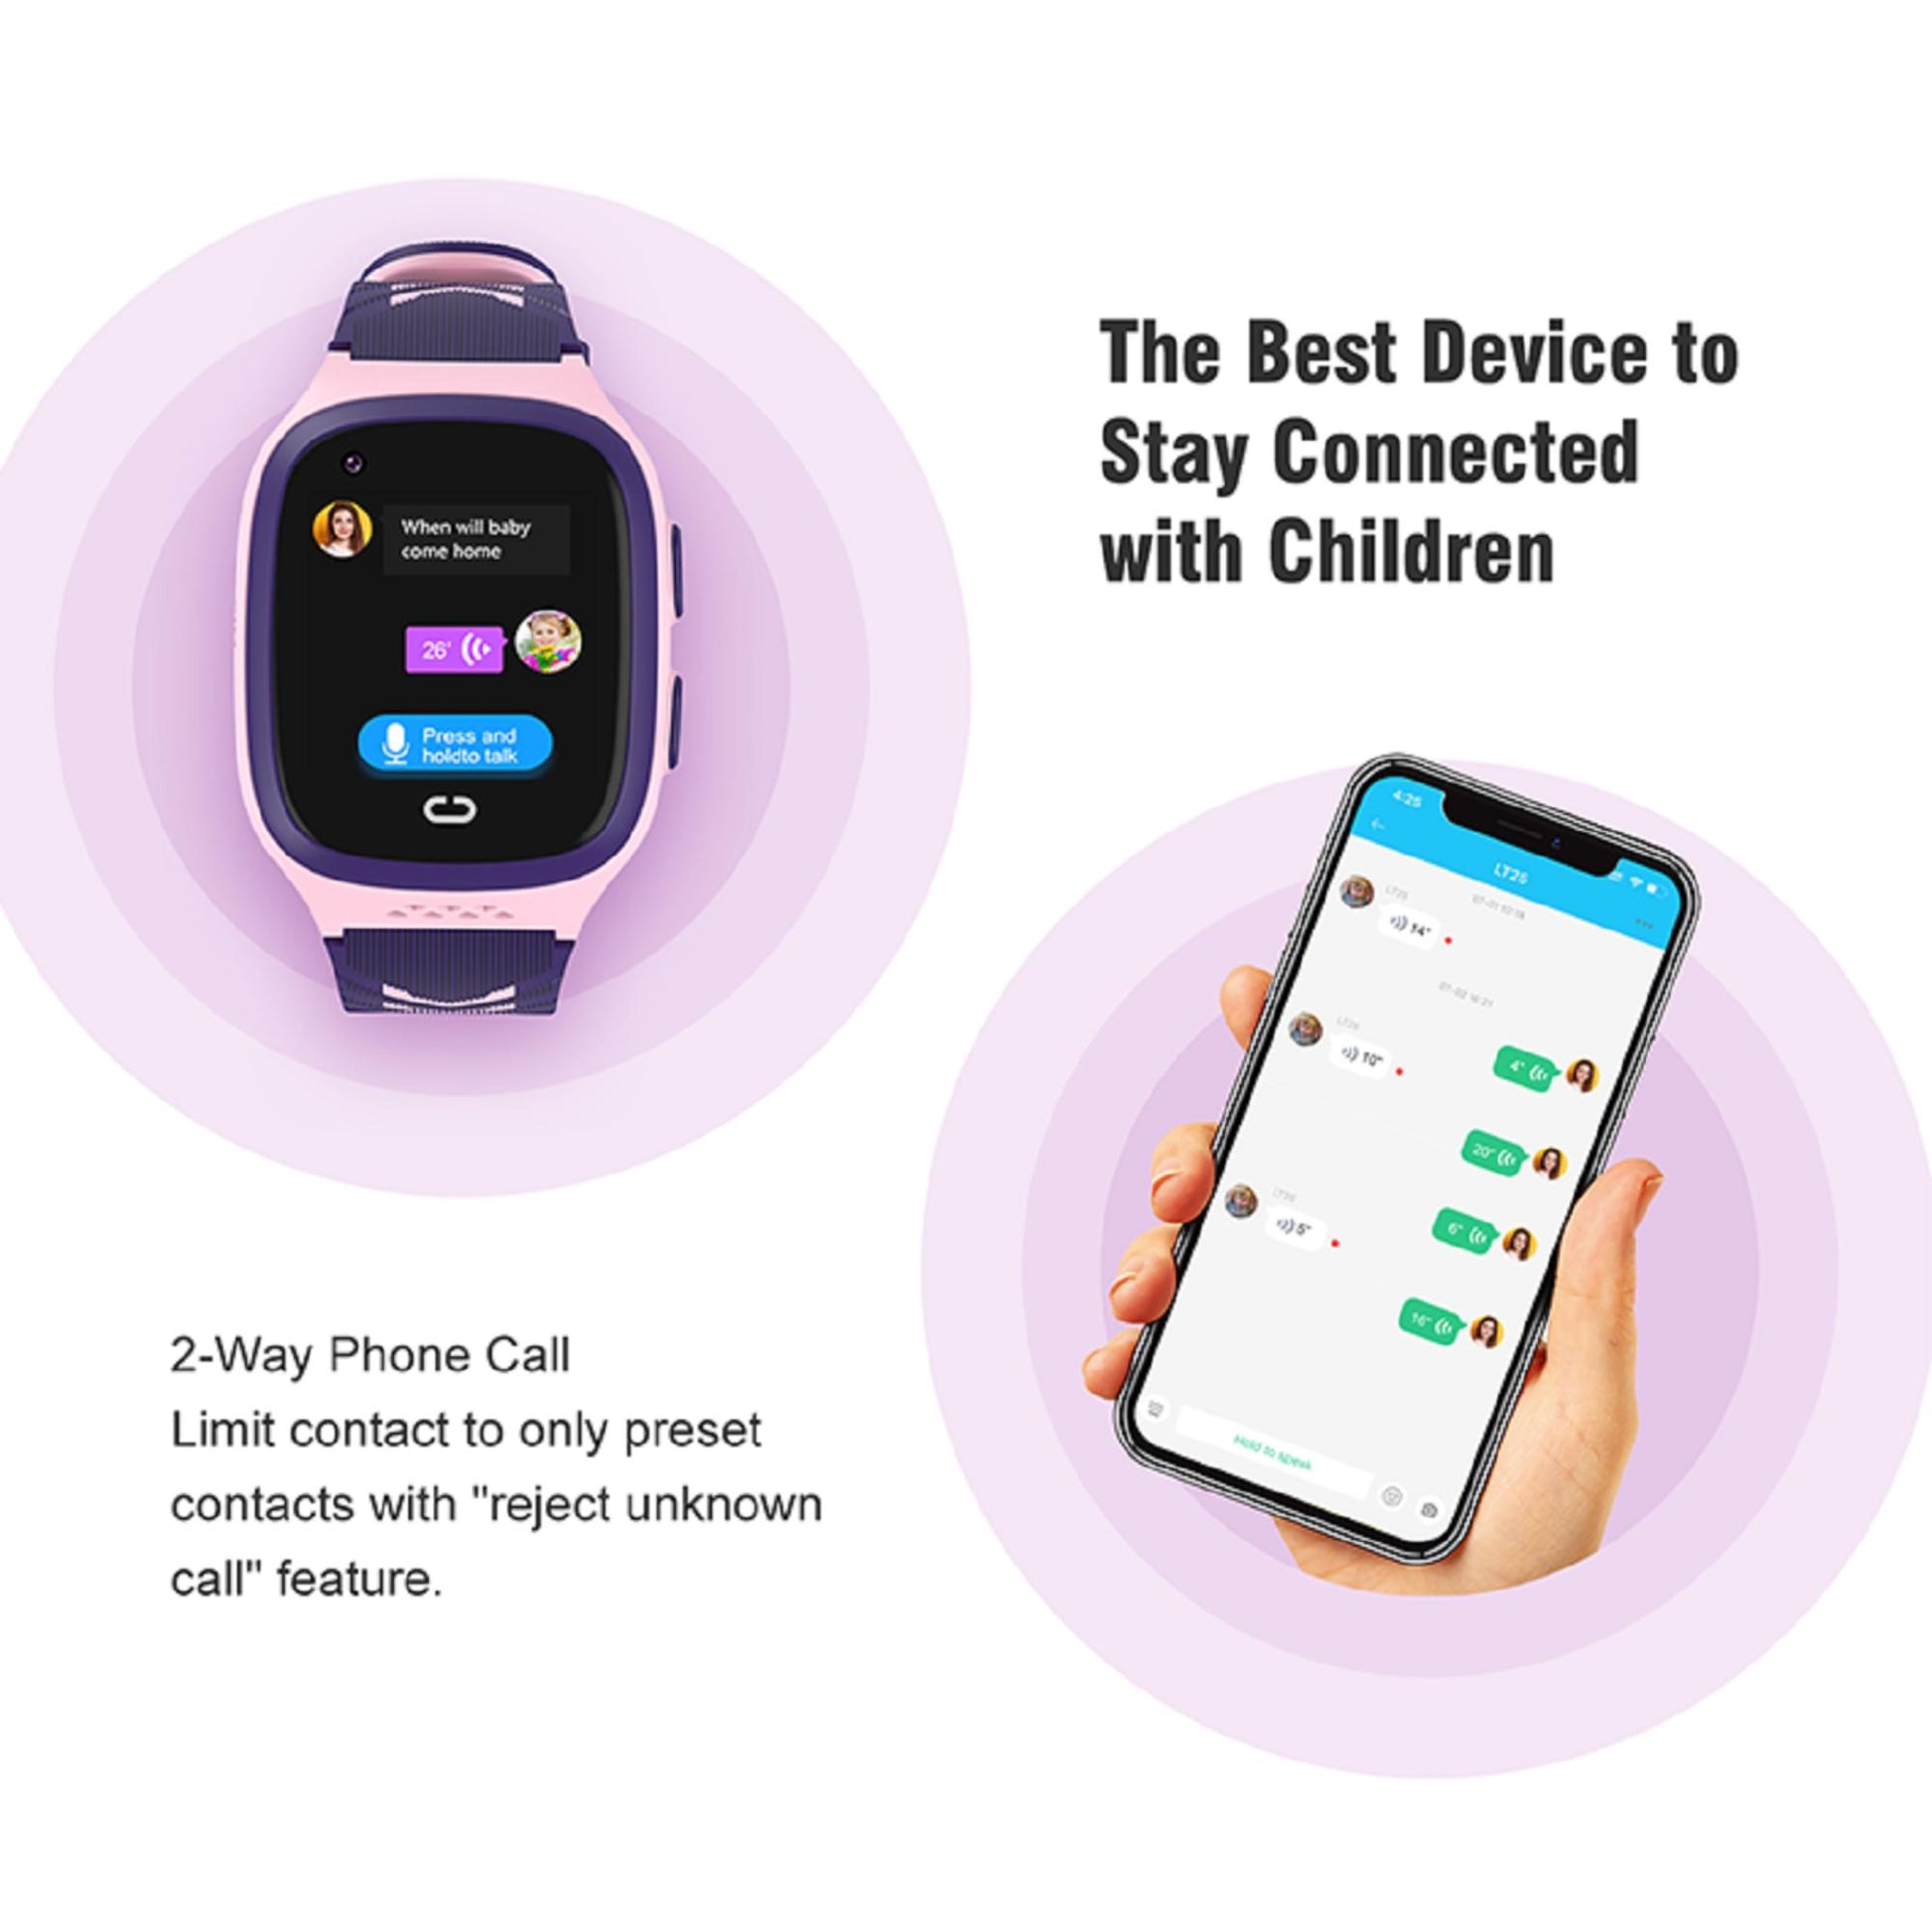 Smartwatch für Kinder - Karen M LT31, 1,4-Zoll-TFT-Bildschirm, langlebiger 700mAh Akku, GPS. | Blue Chilli Electronics.